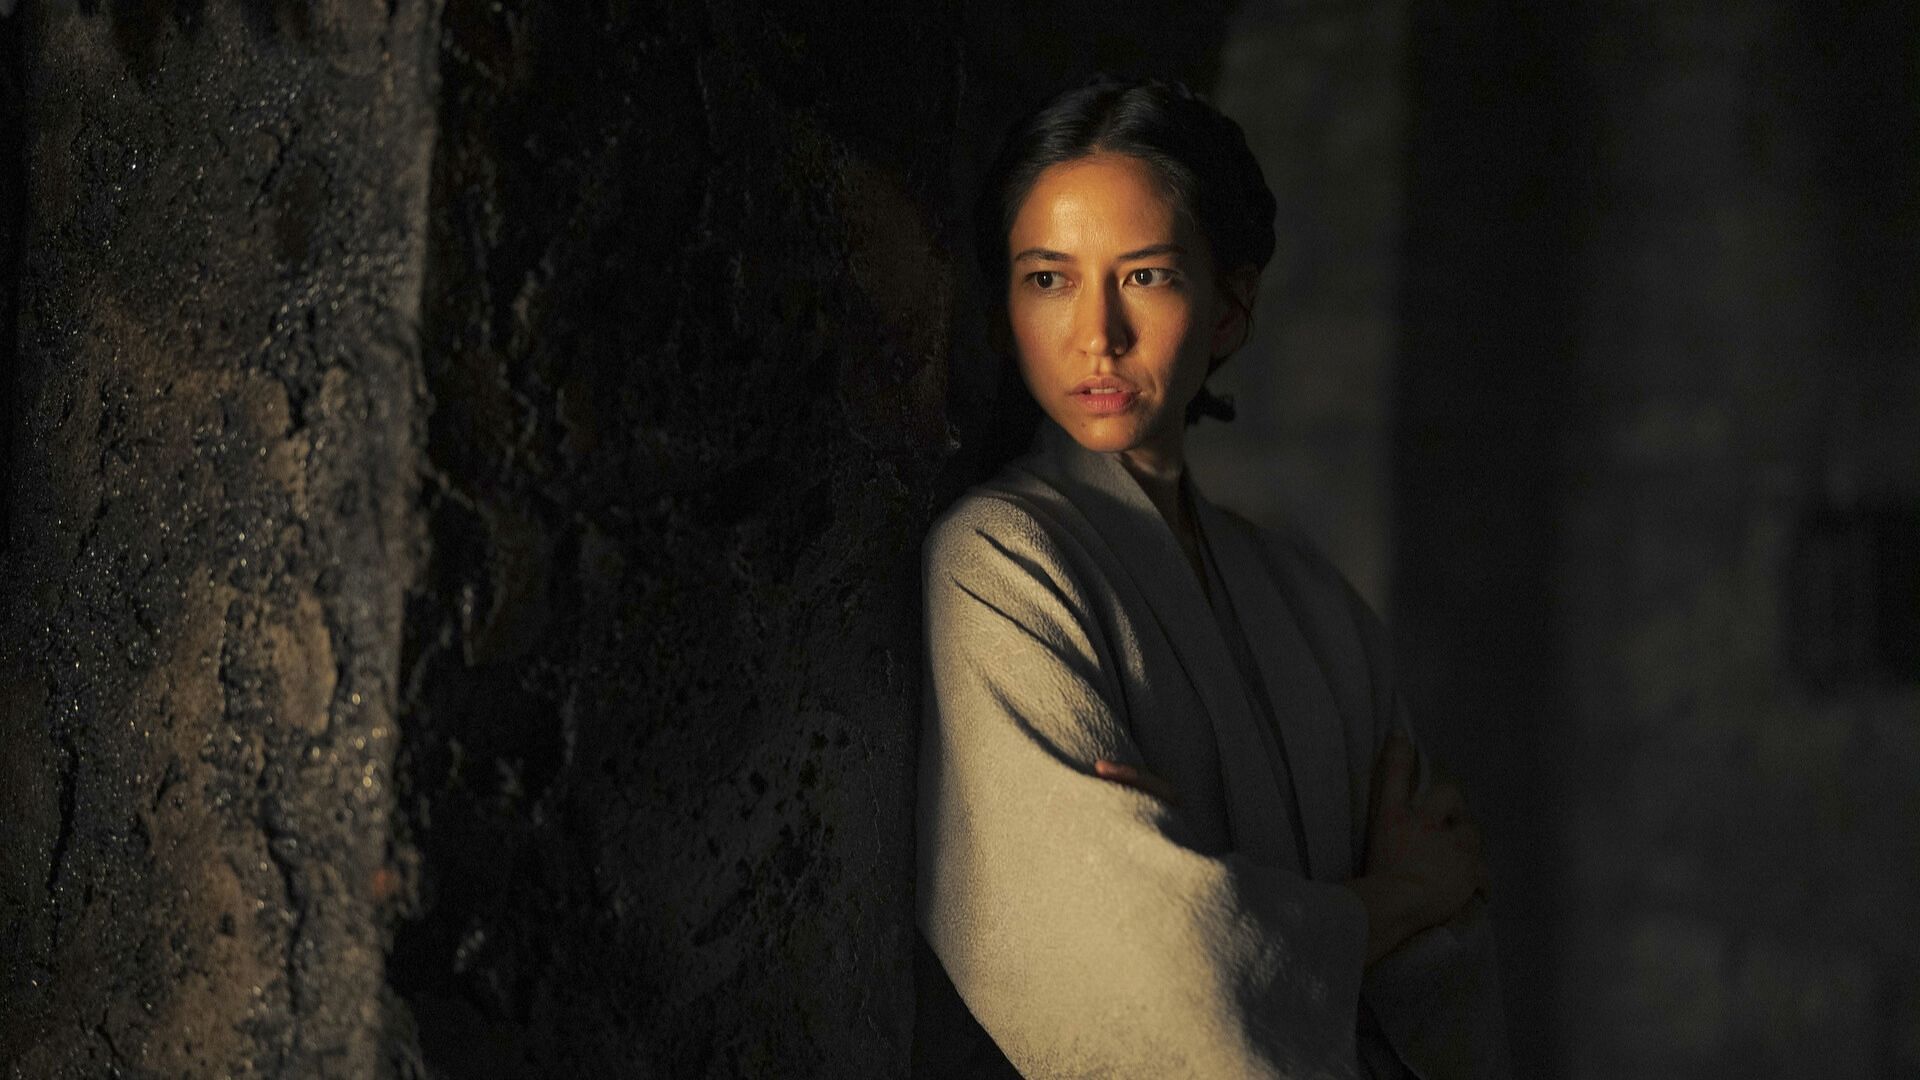 Sonoya Mizuno as Lady Mysaria (Image via HBO Entertainemnt)